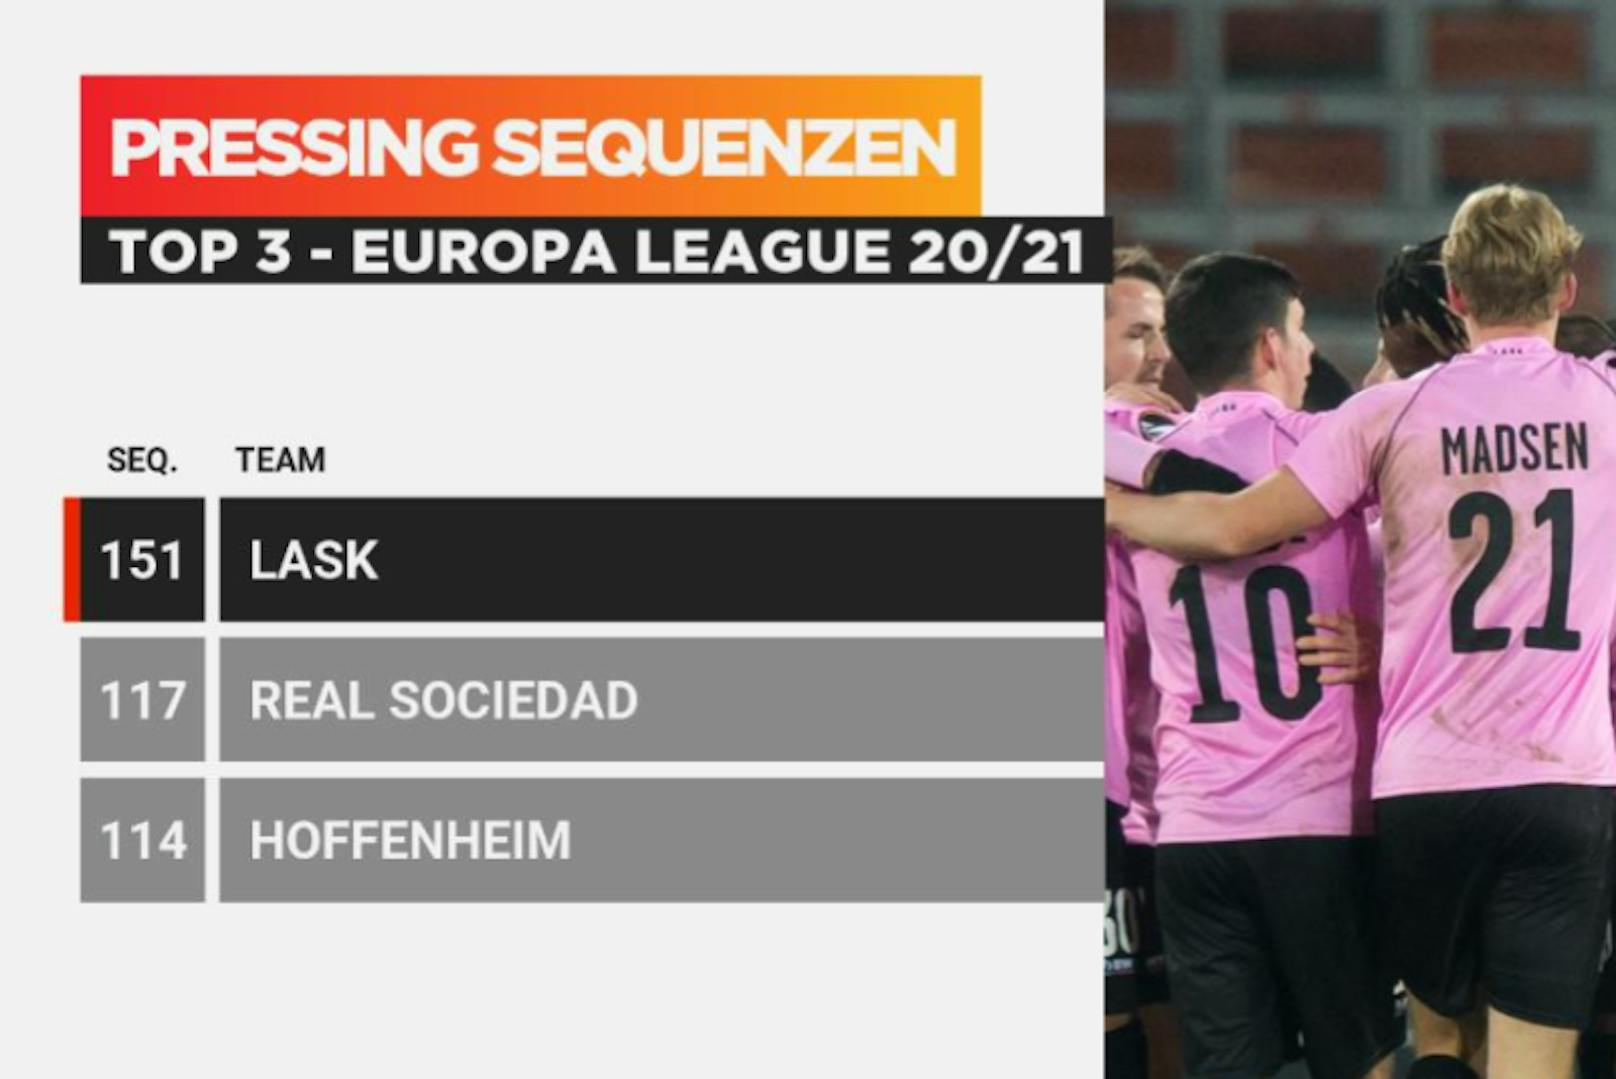 Kein anderes Team in der Europa League hatte mehr Pressing-Sequenzen als der LASK.